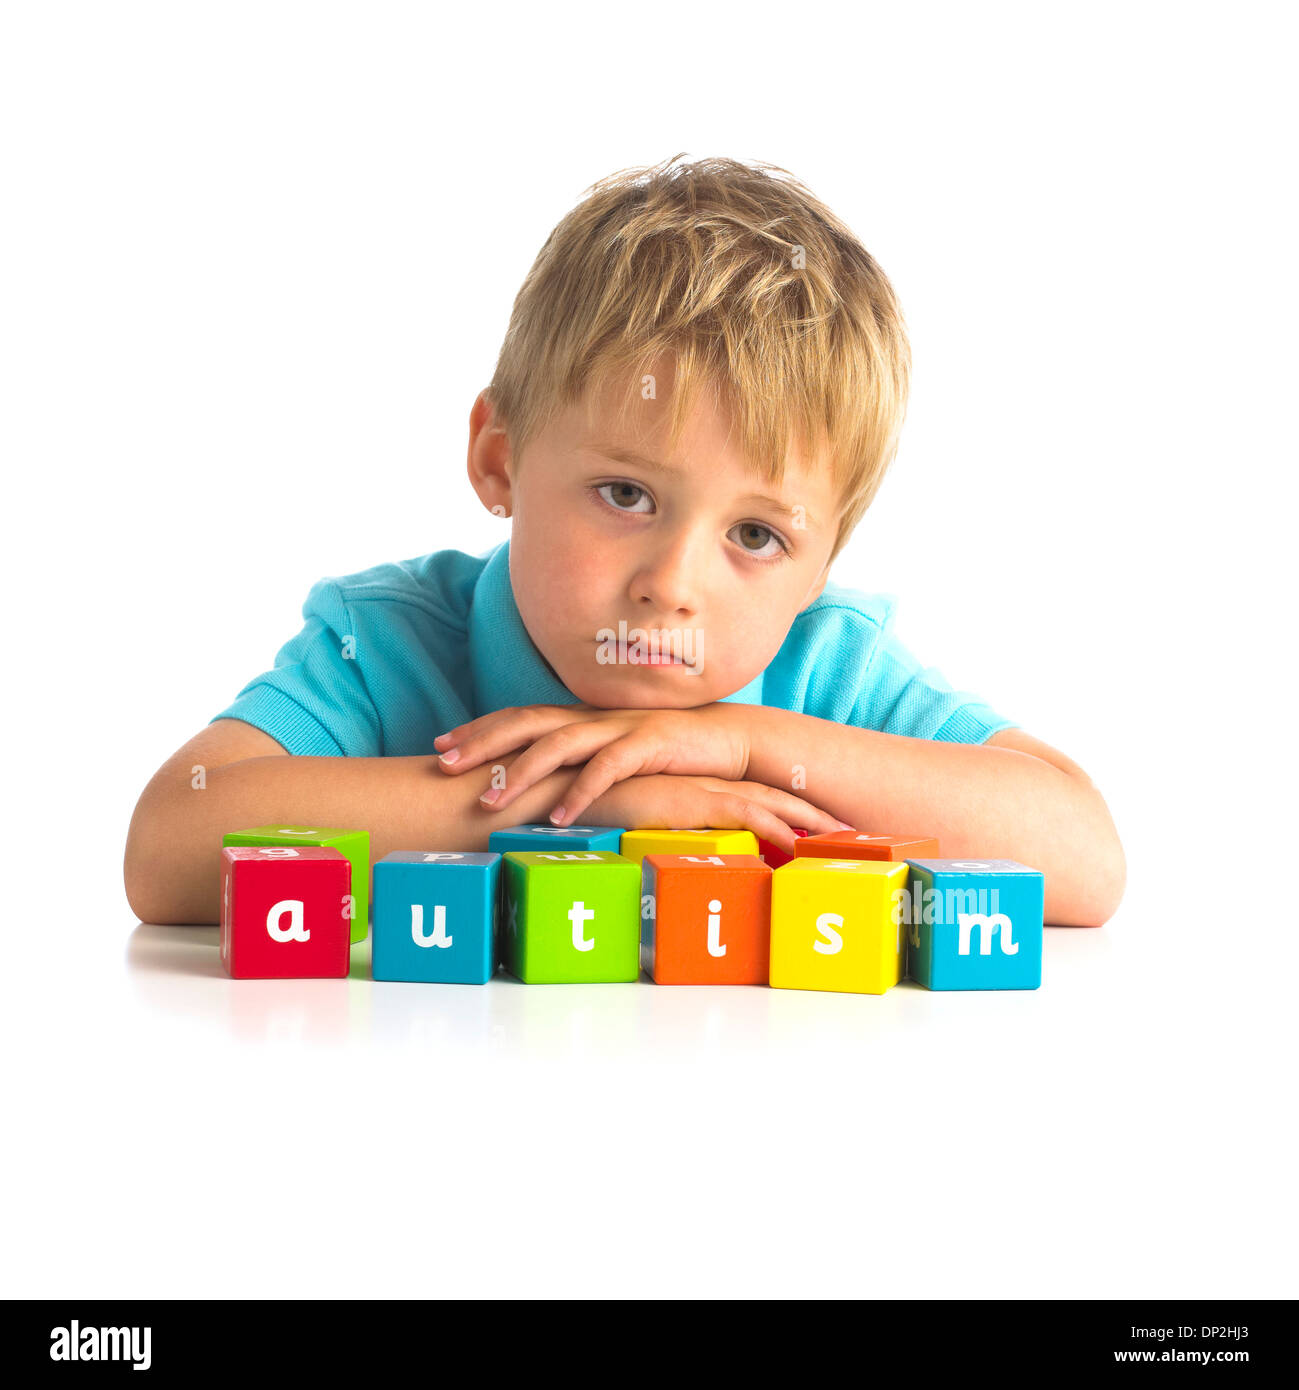 Autismus, Konzeptbild Stockfoto